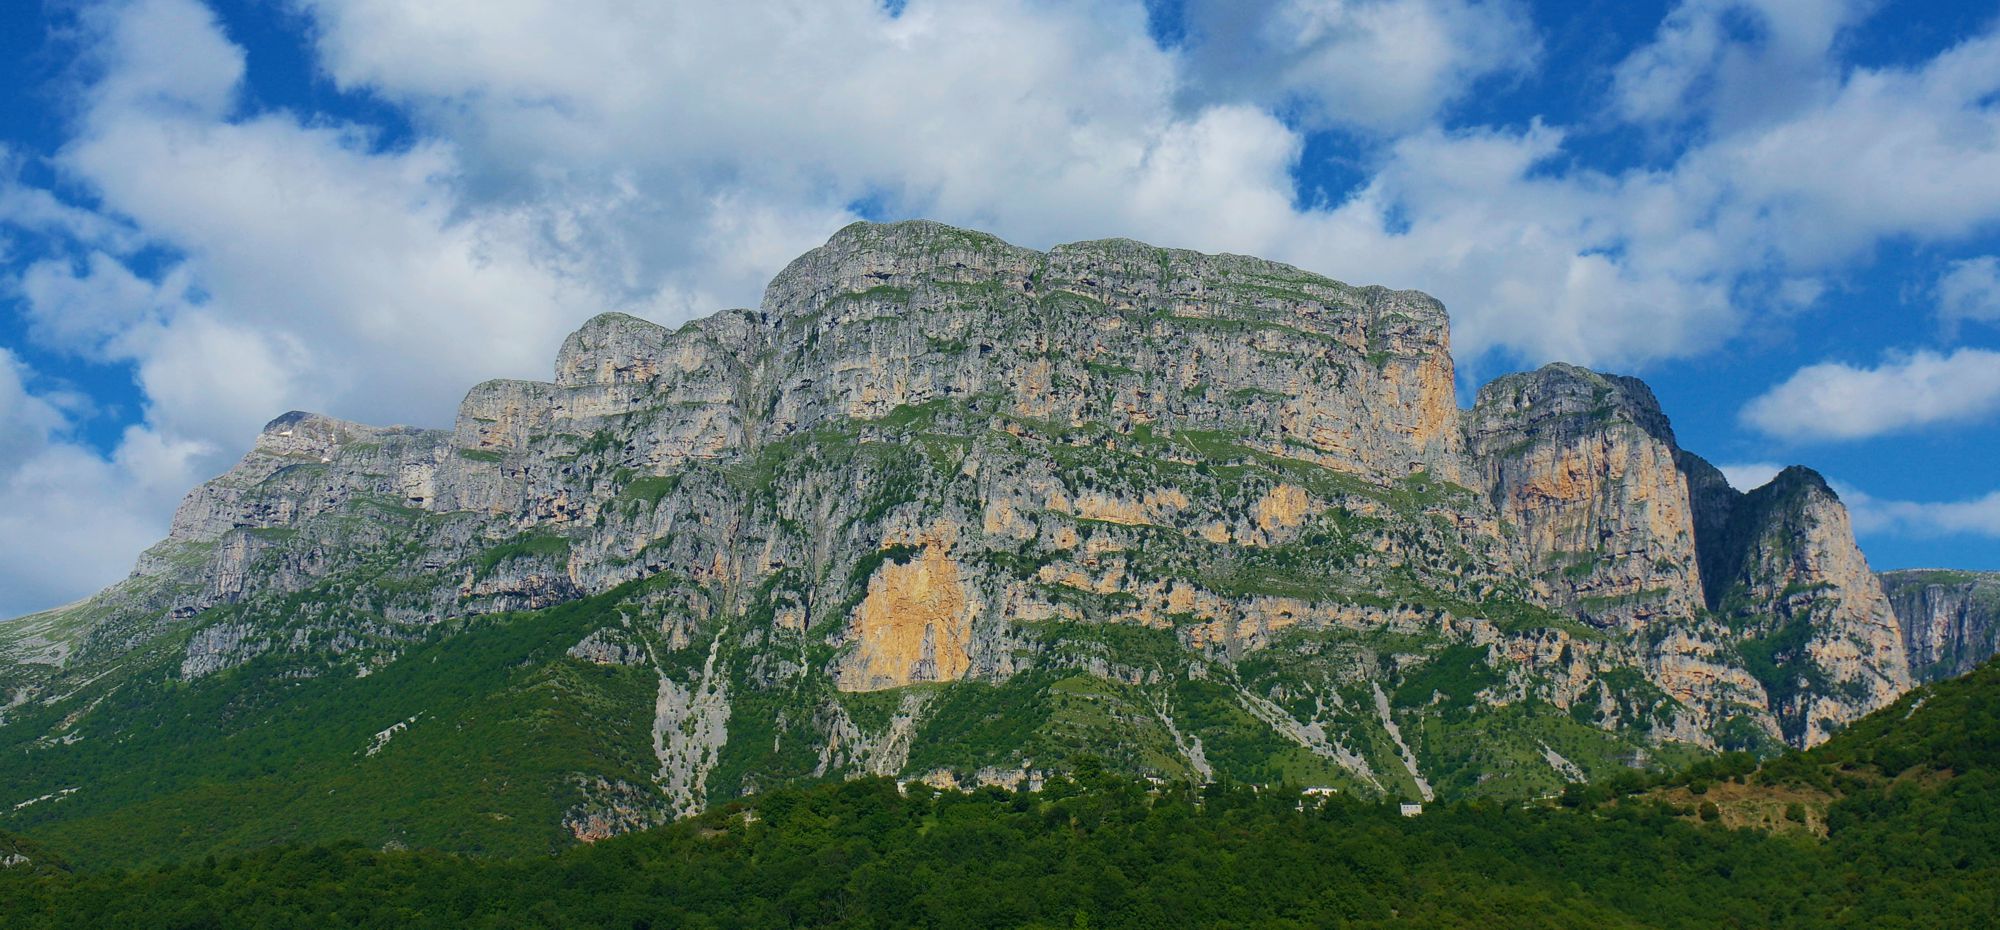 Γεωγραφία του Ζαγορίου: Οι Πύργοι του Πάπιγκου, ασβεστολιθικοί πυλώνες που στηρίζουν τα καρστικά οροπέδια της Αστράκας